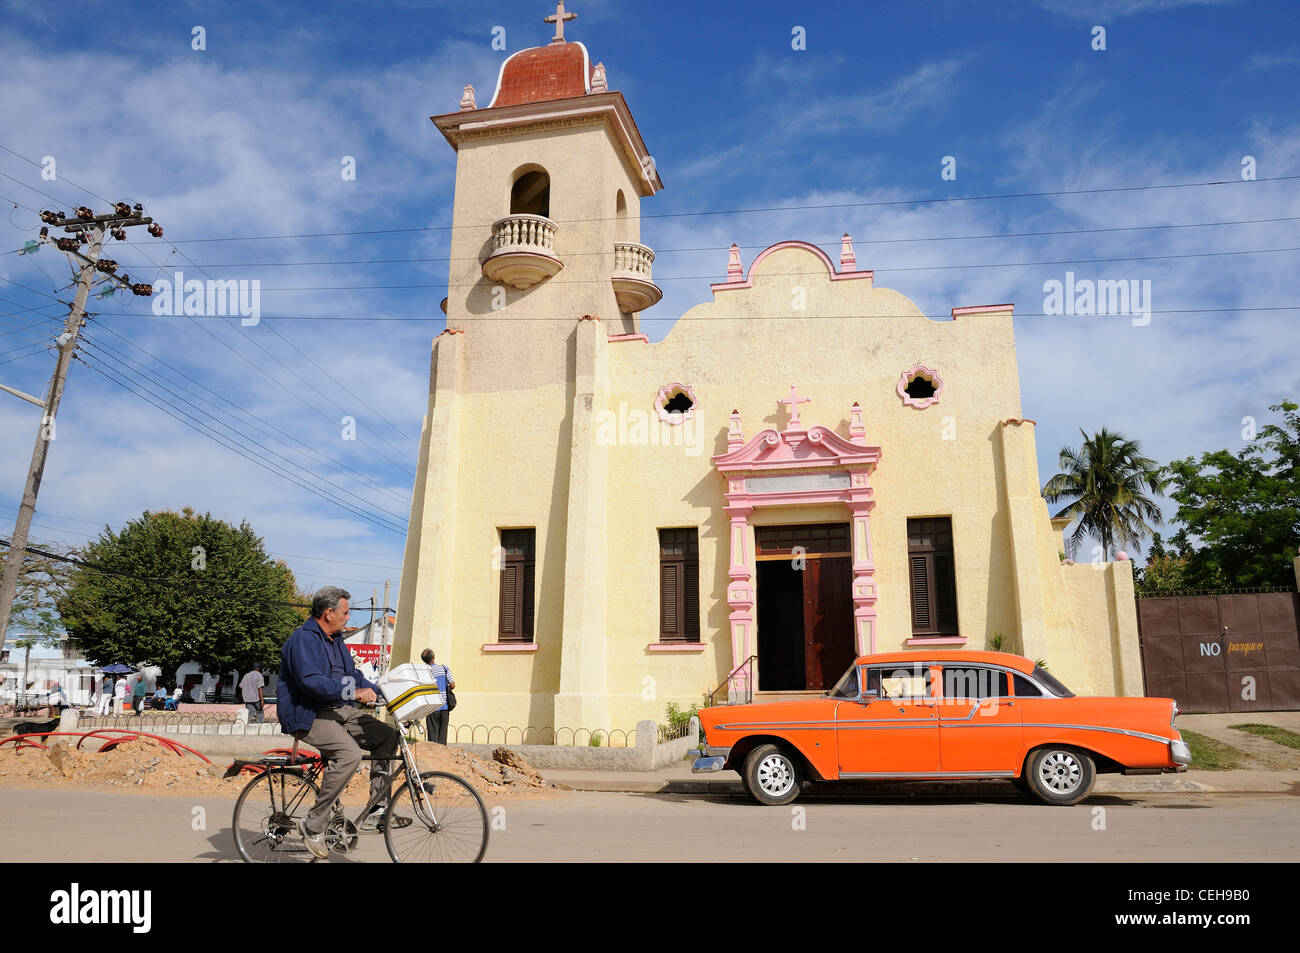 Bike and old car in front of church in Nueva Gerona, Iglesia de Nuestra Senora de los Dolores, Isla de la Juventud, Cuba Stock Photo